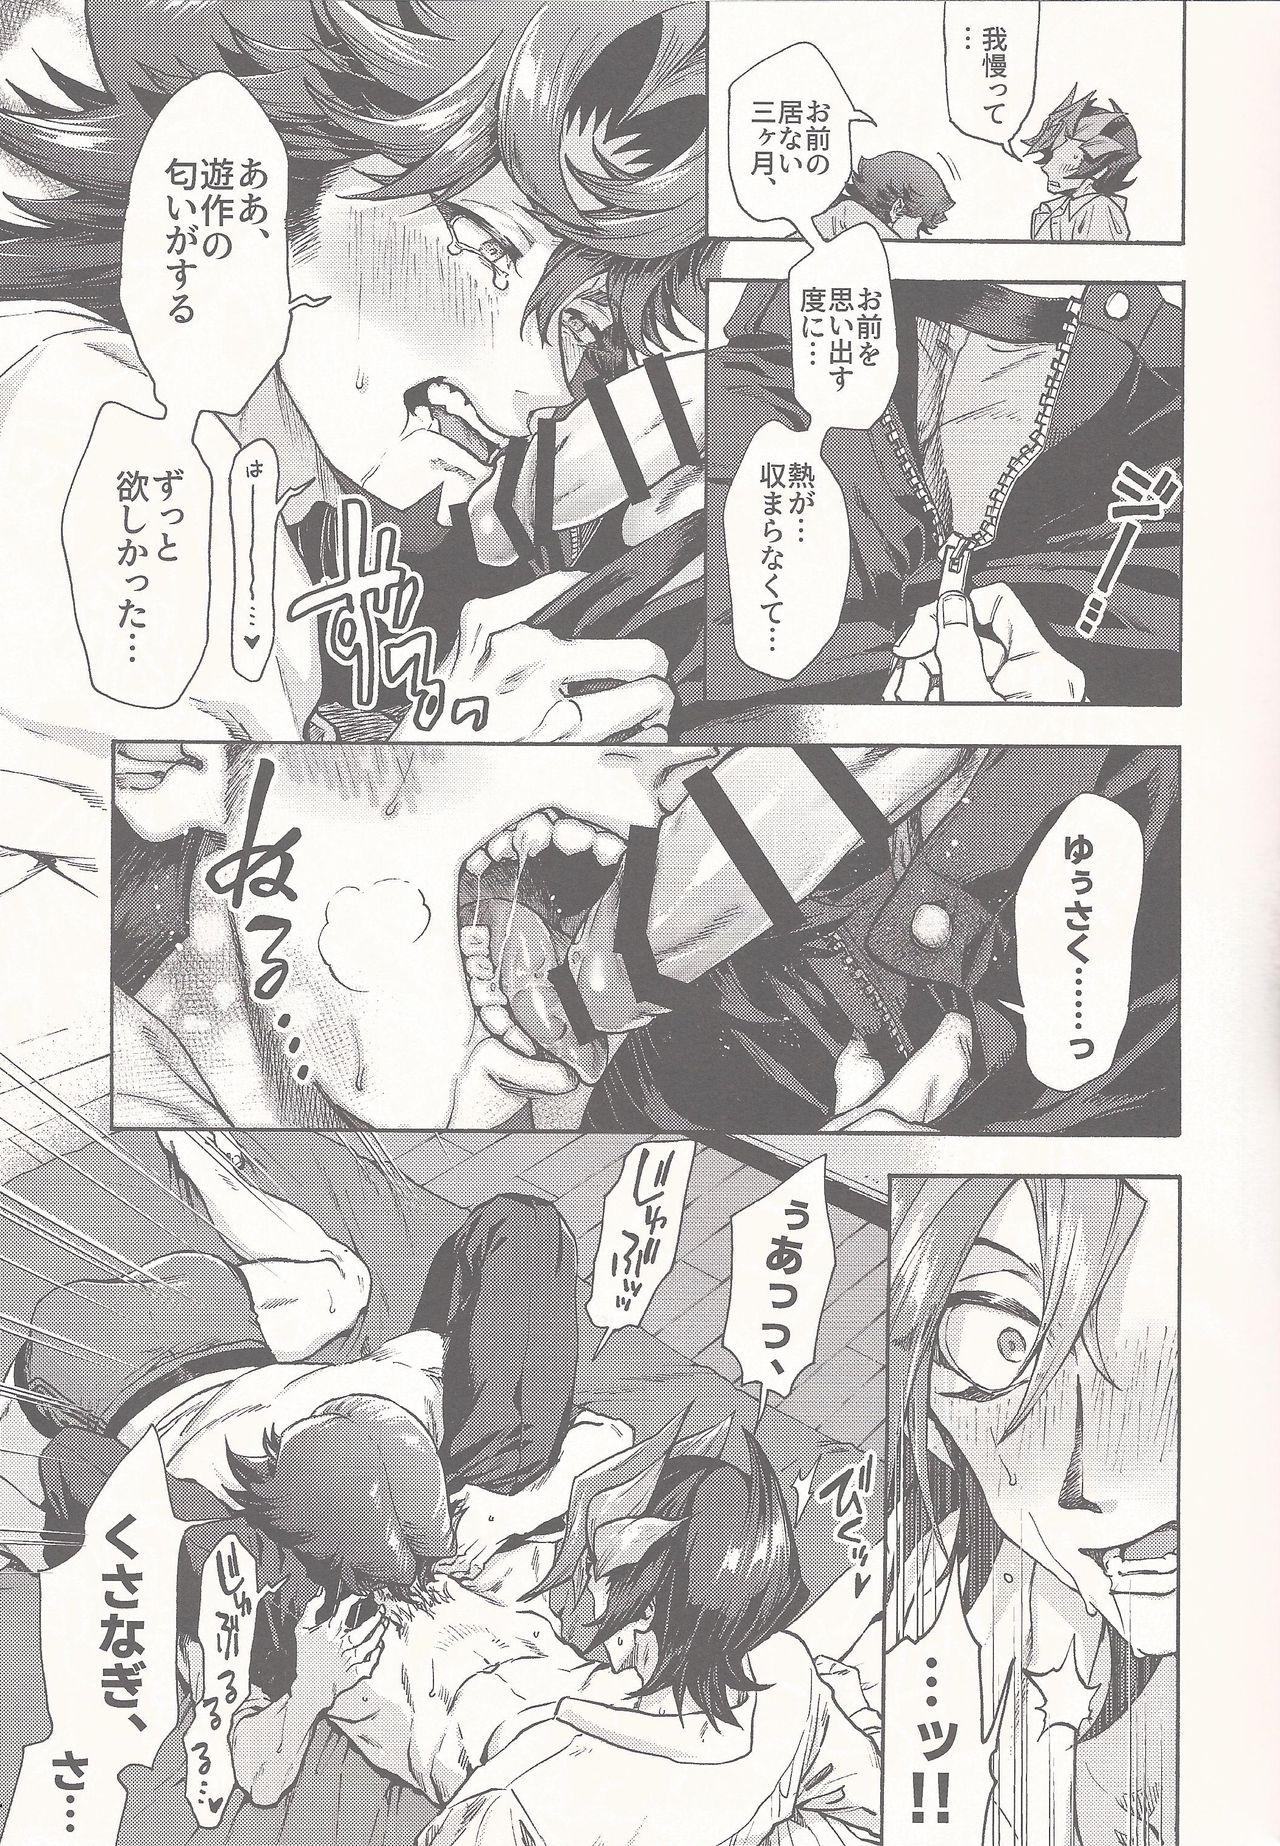 Humiliation 3 Kagetsu no o azuke - Yu-gi-oh vrains Porra - Page 6